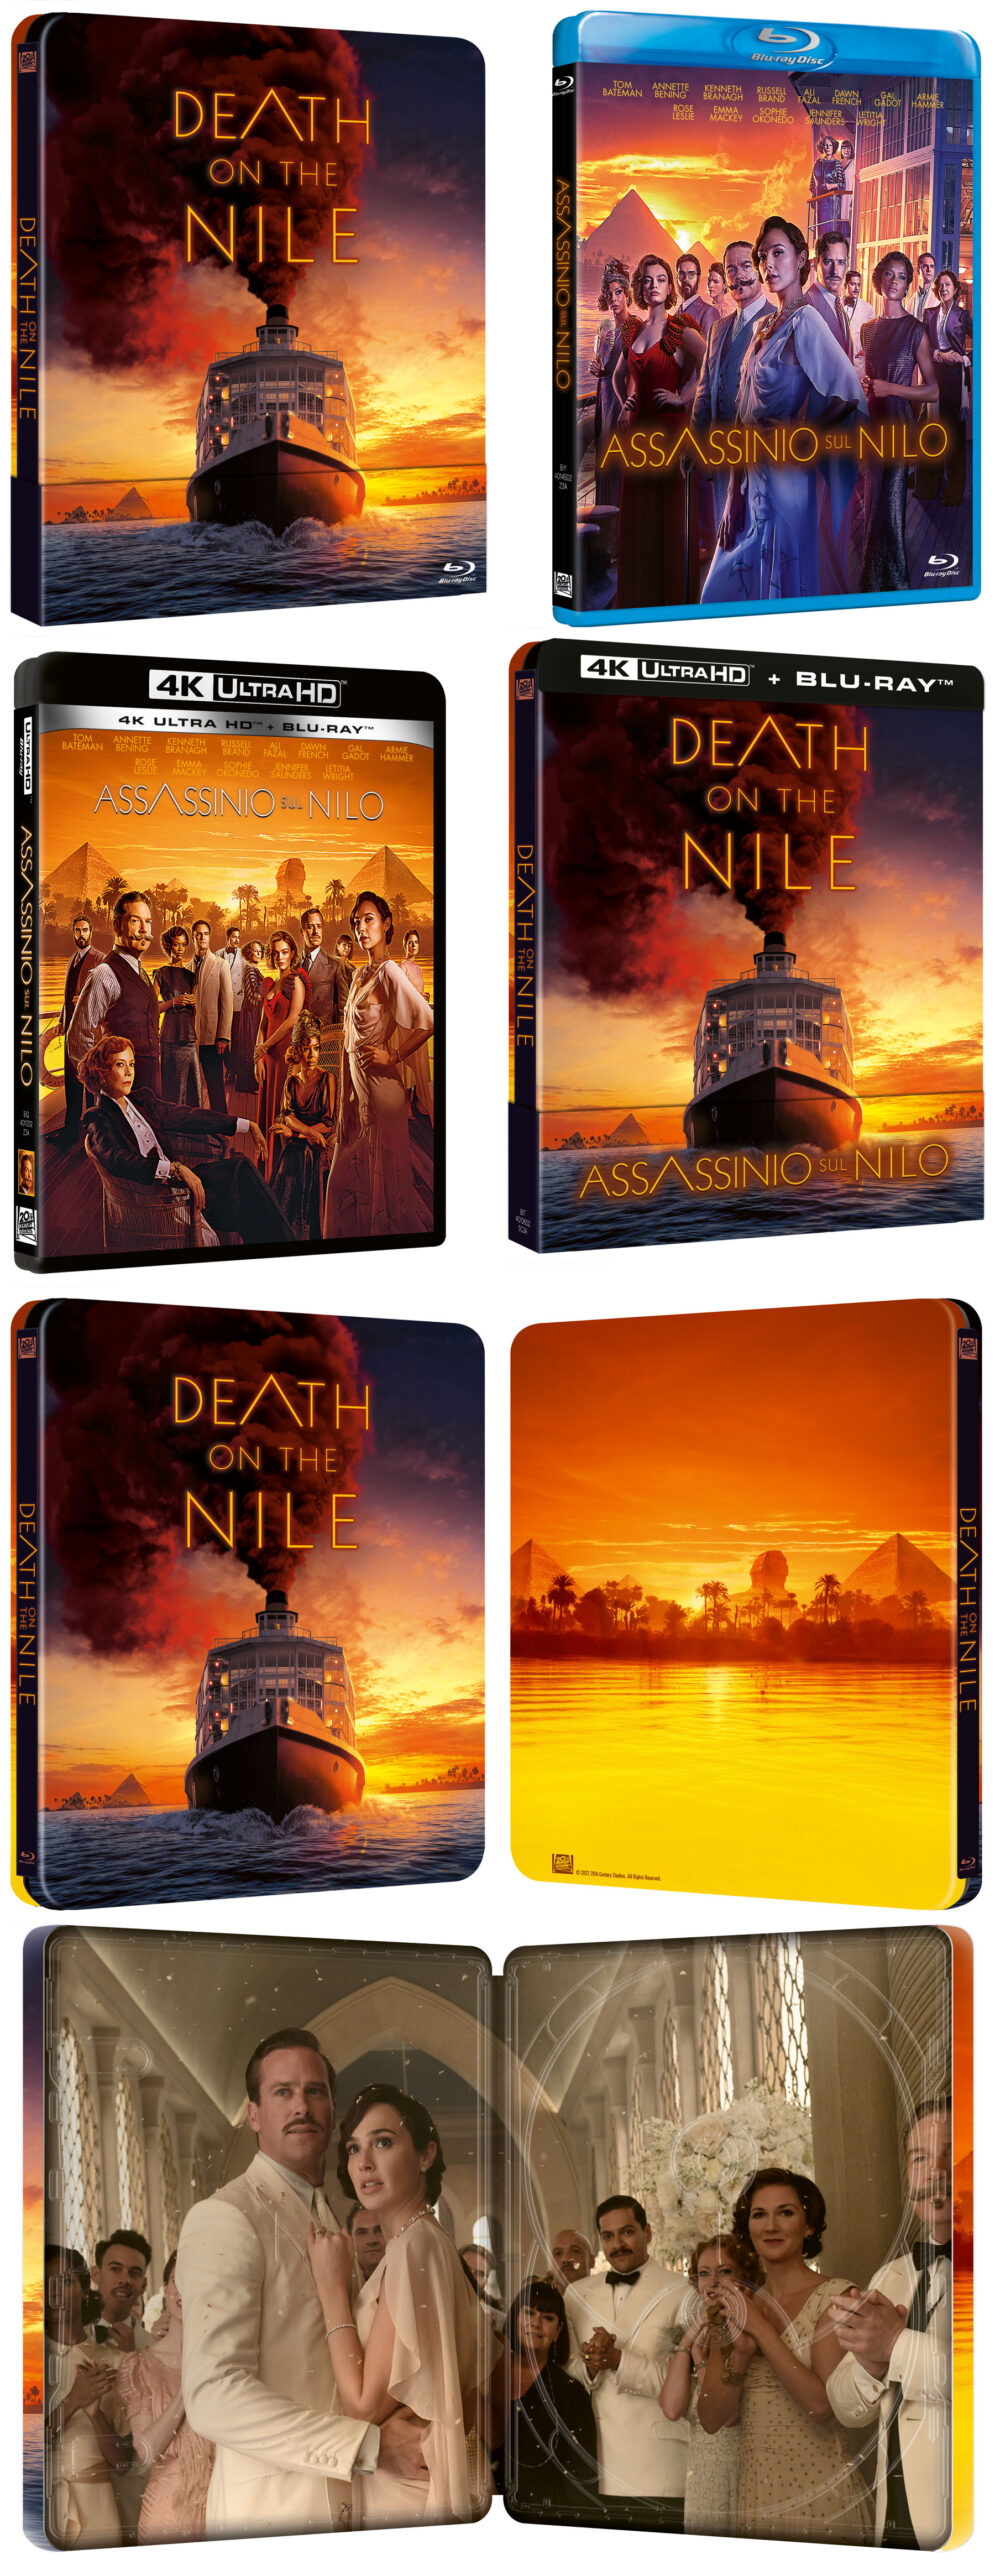 Assassinio sul Nilo in Digitale, DVD, Blu-ray e Steelbook